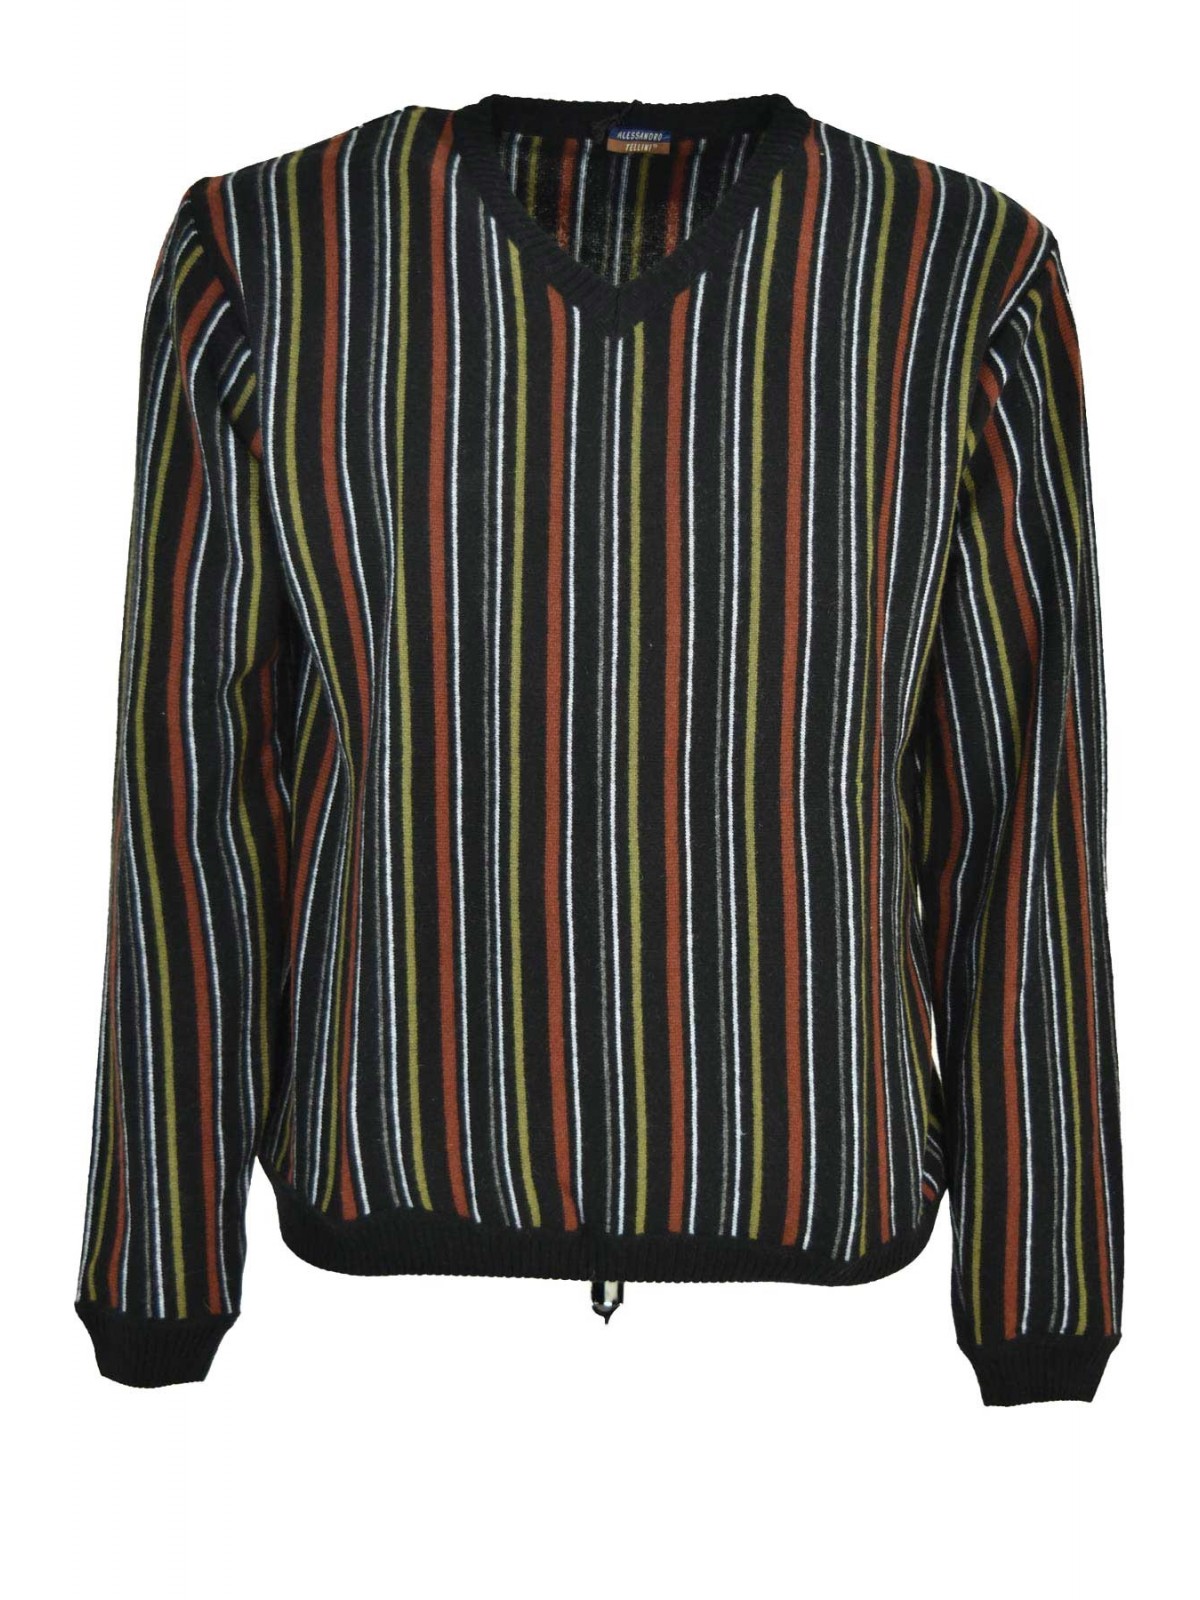 Herrenhemd mit V-Ausschnitt Schwarz Rost Streifen Grün Weiß Grau - Alessandro Tellini